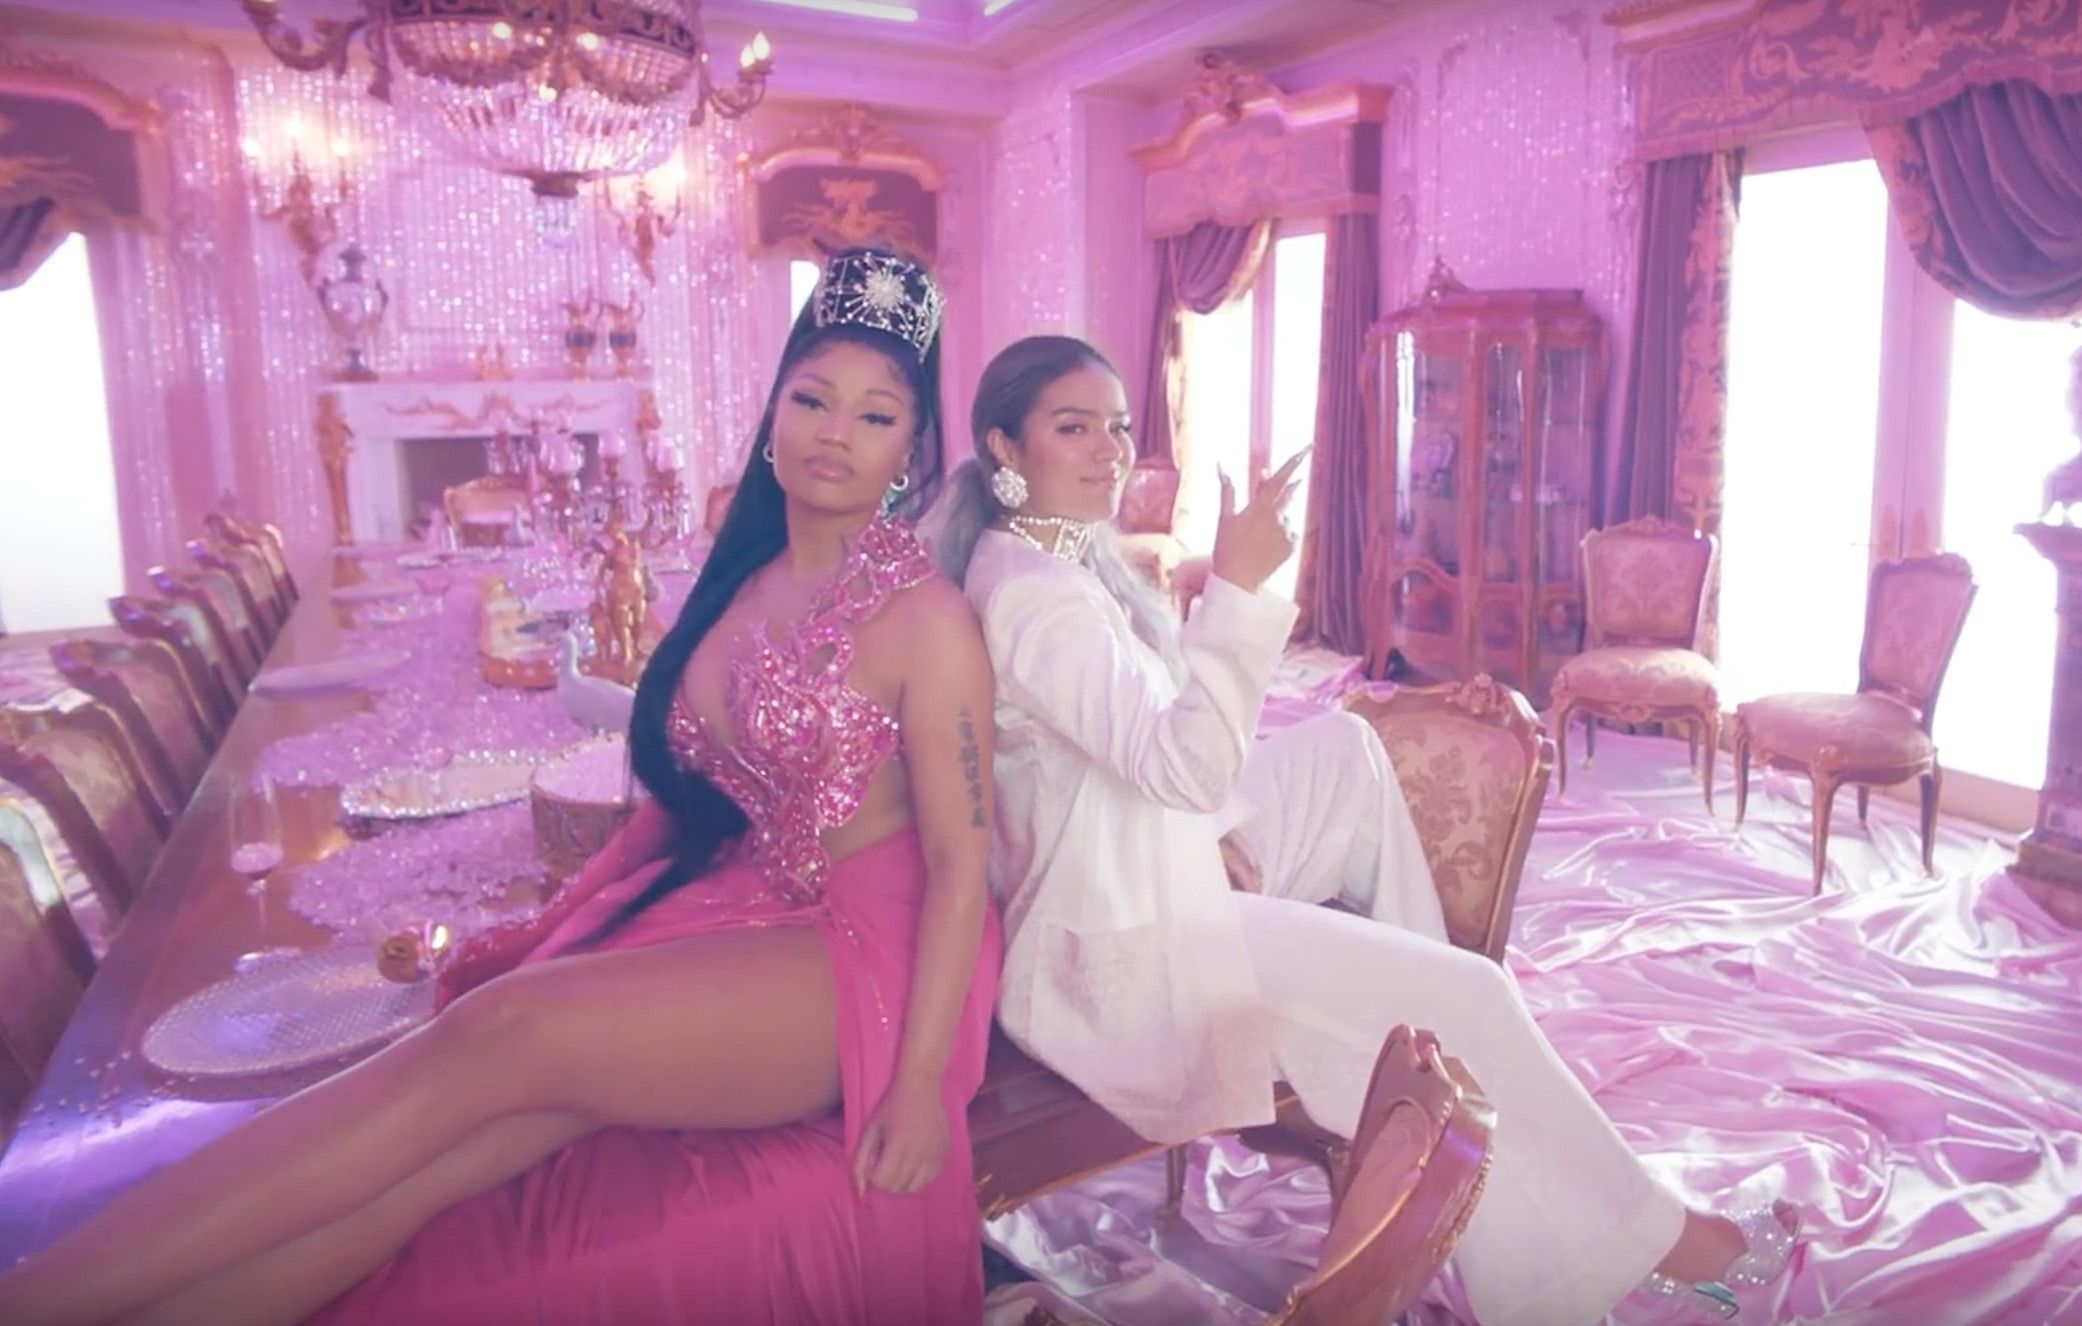 Karol G, Nicki Minaj Exude Glamour in Surprise New 'Tusa' Video